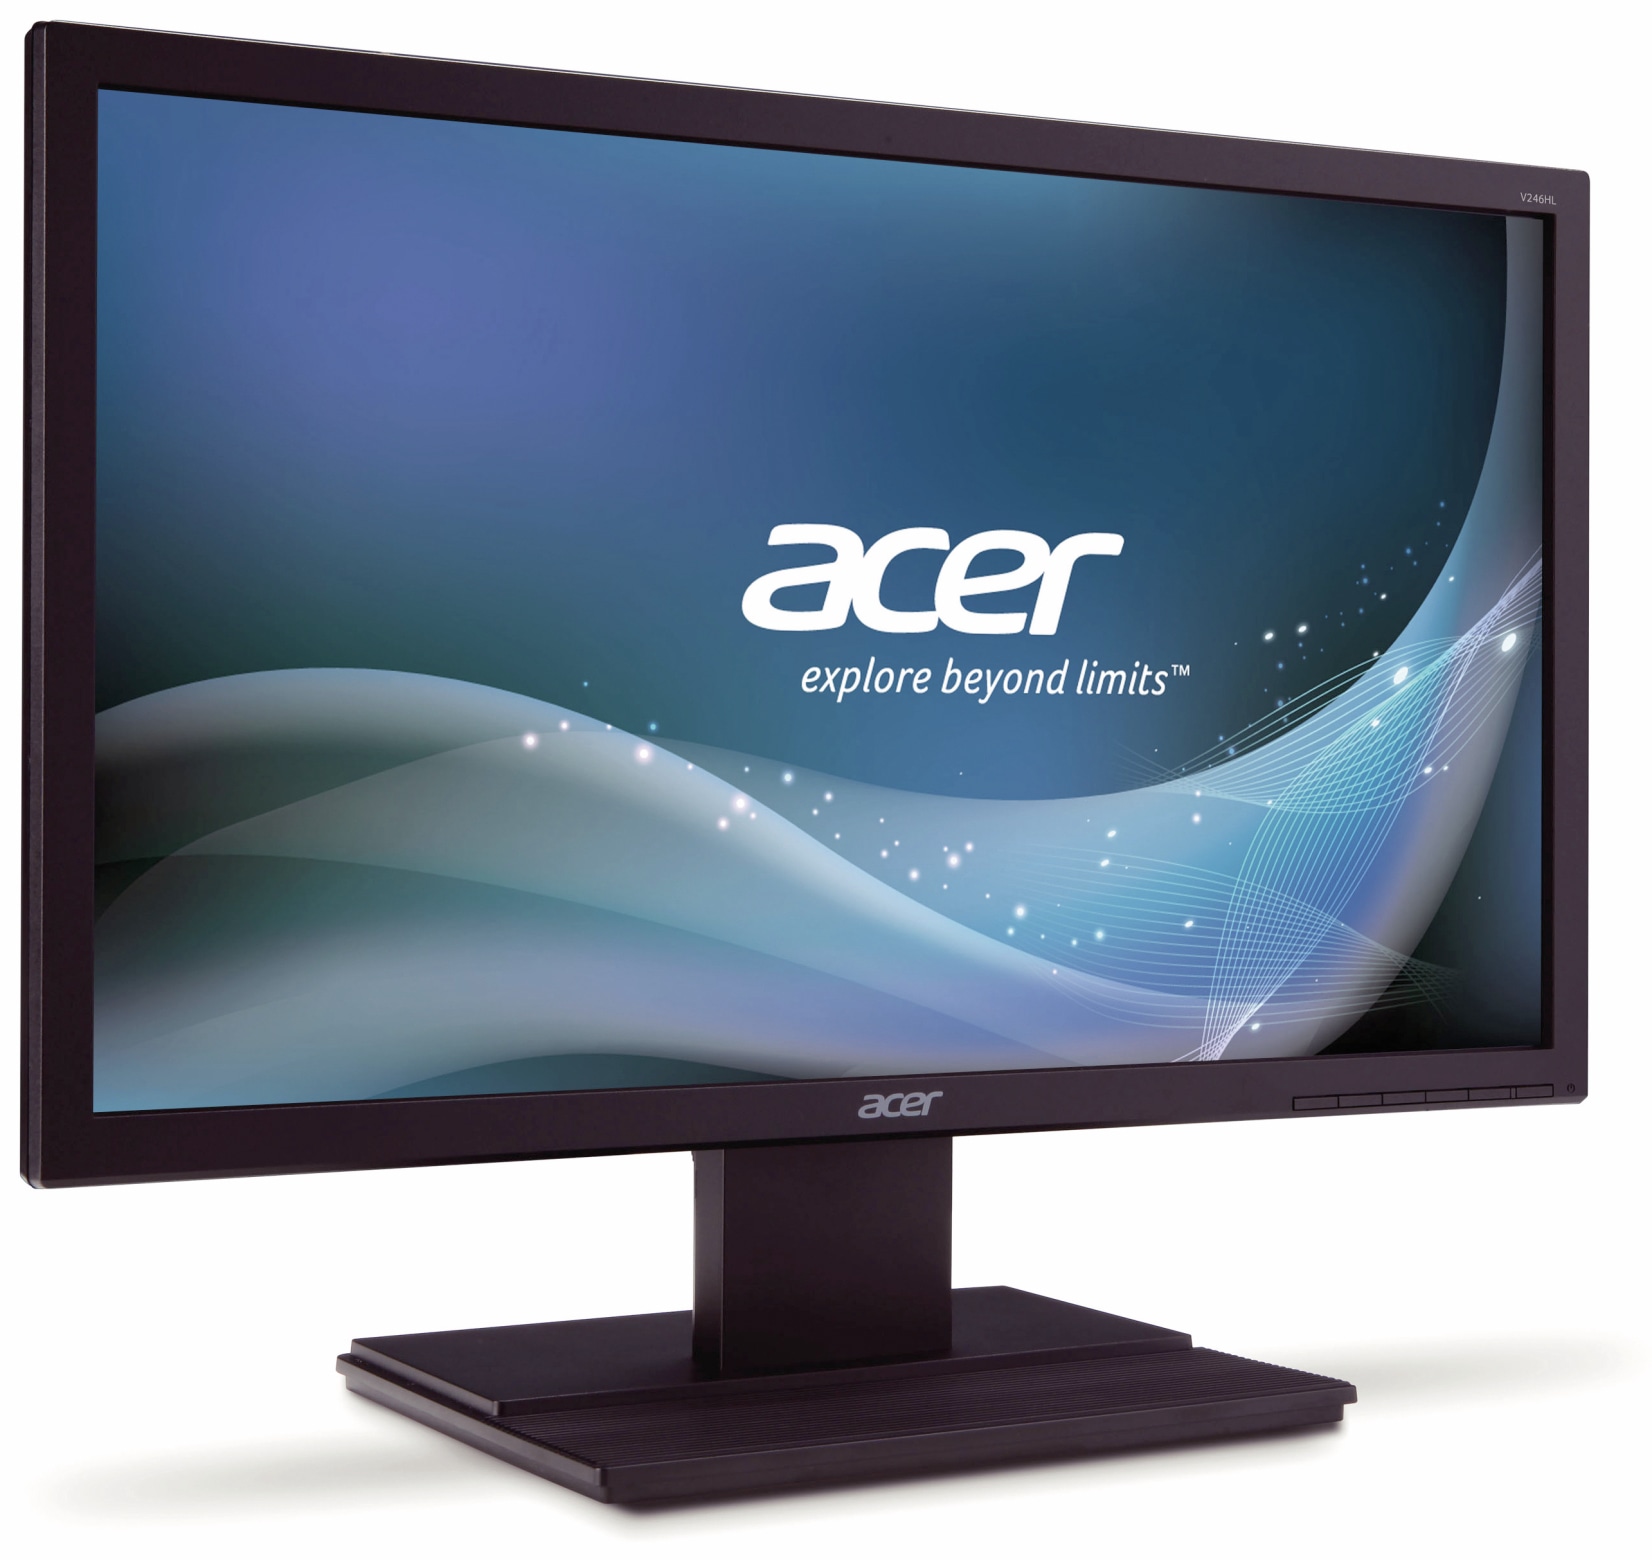 Acer 61 cm (24") LED-Monitor V246HLbmd, EEK: F